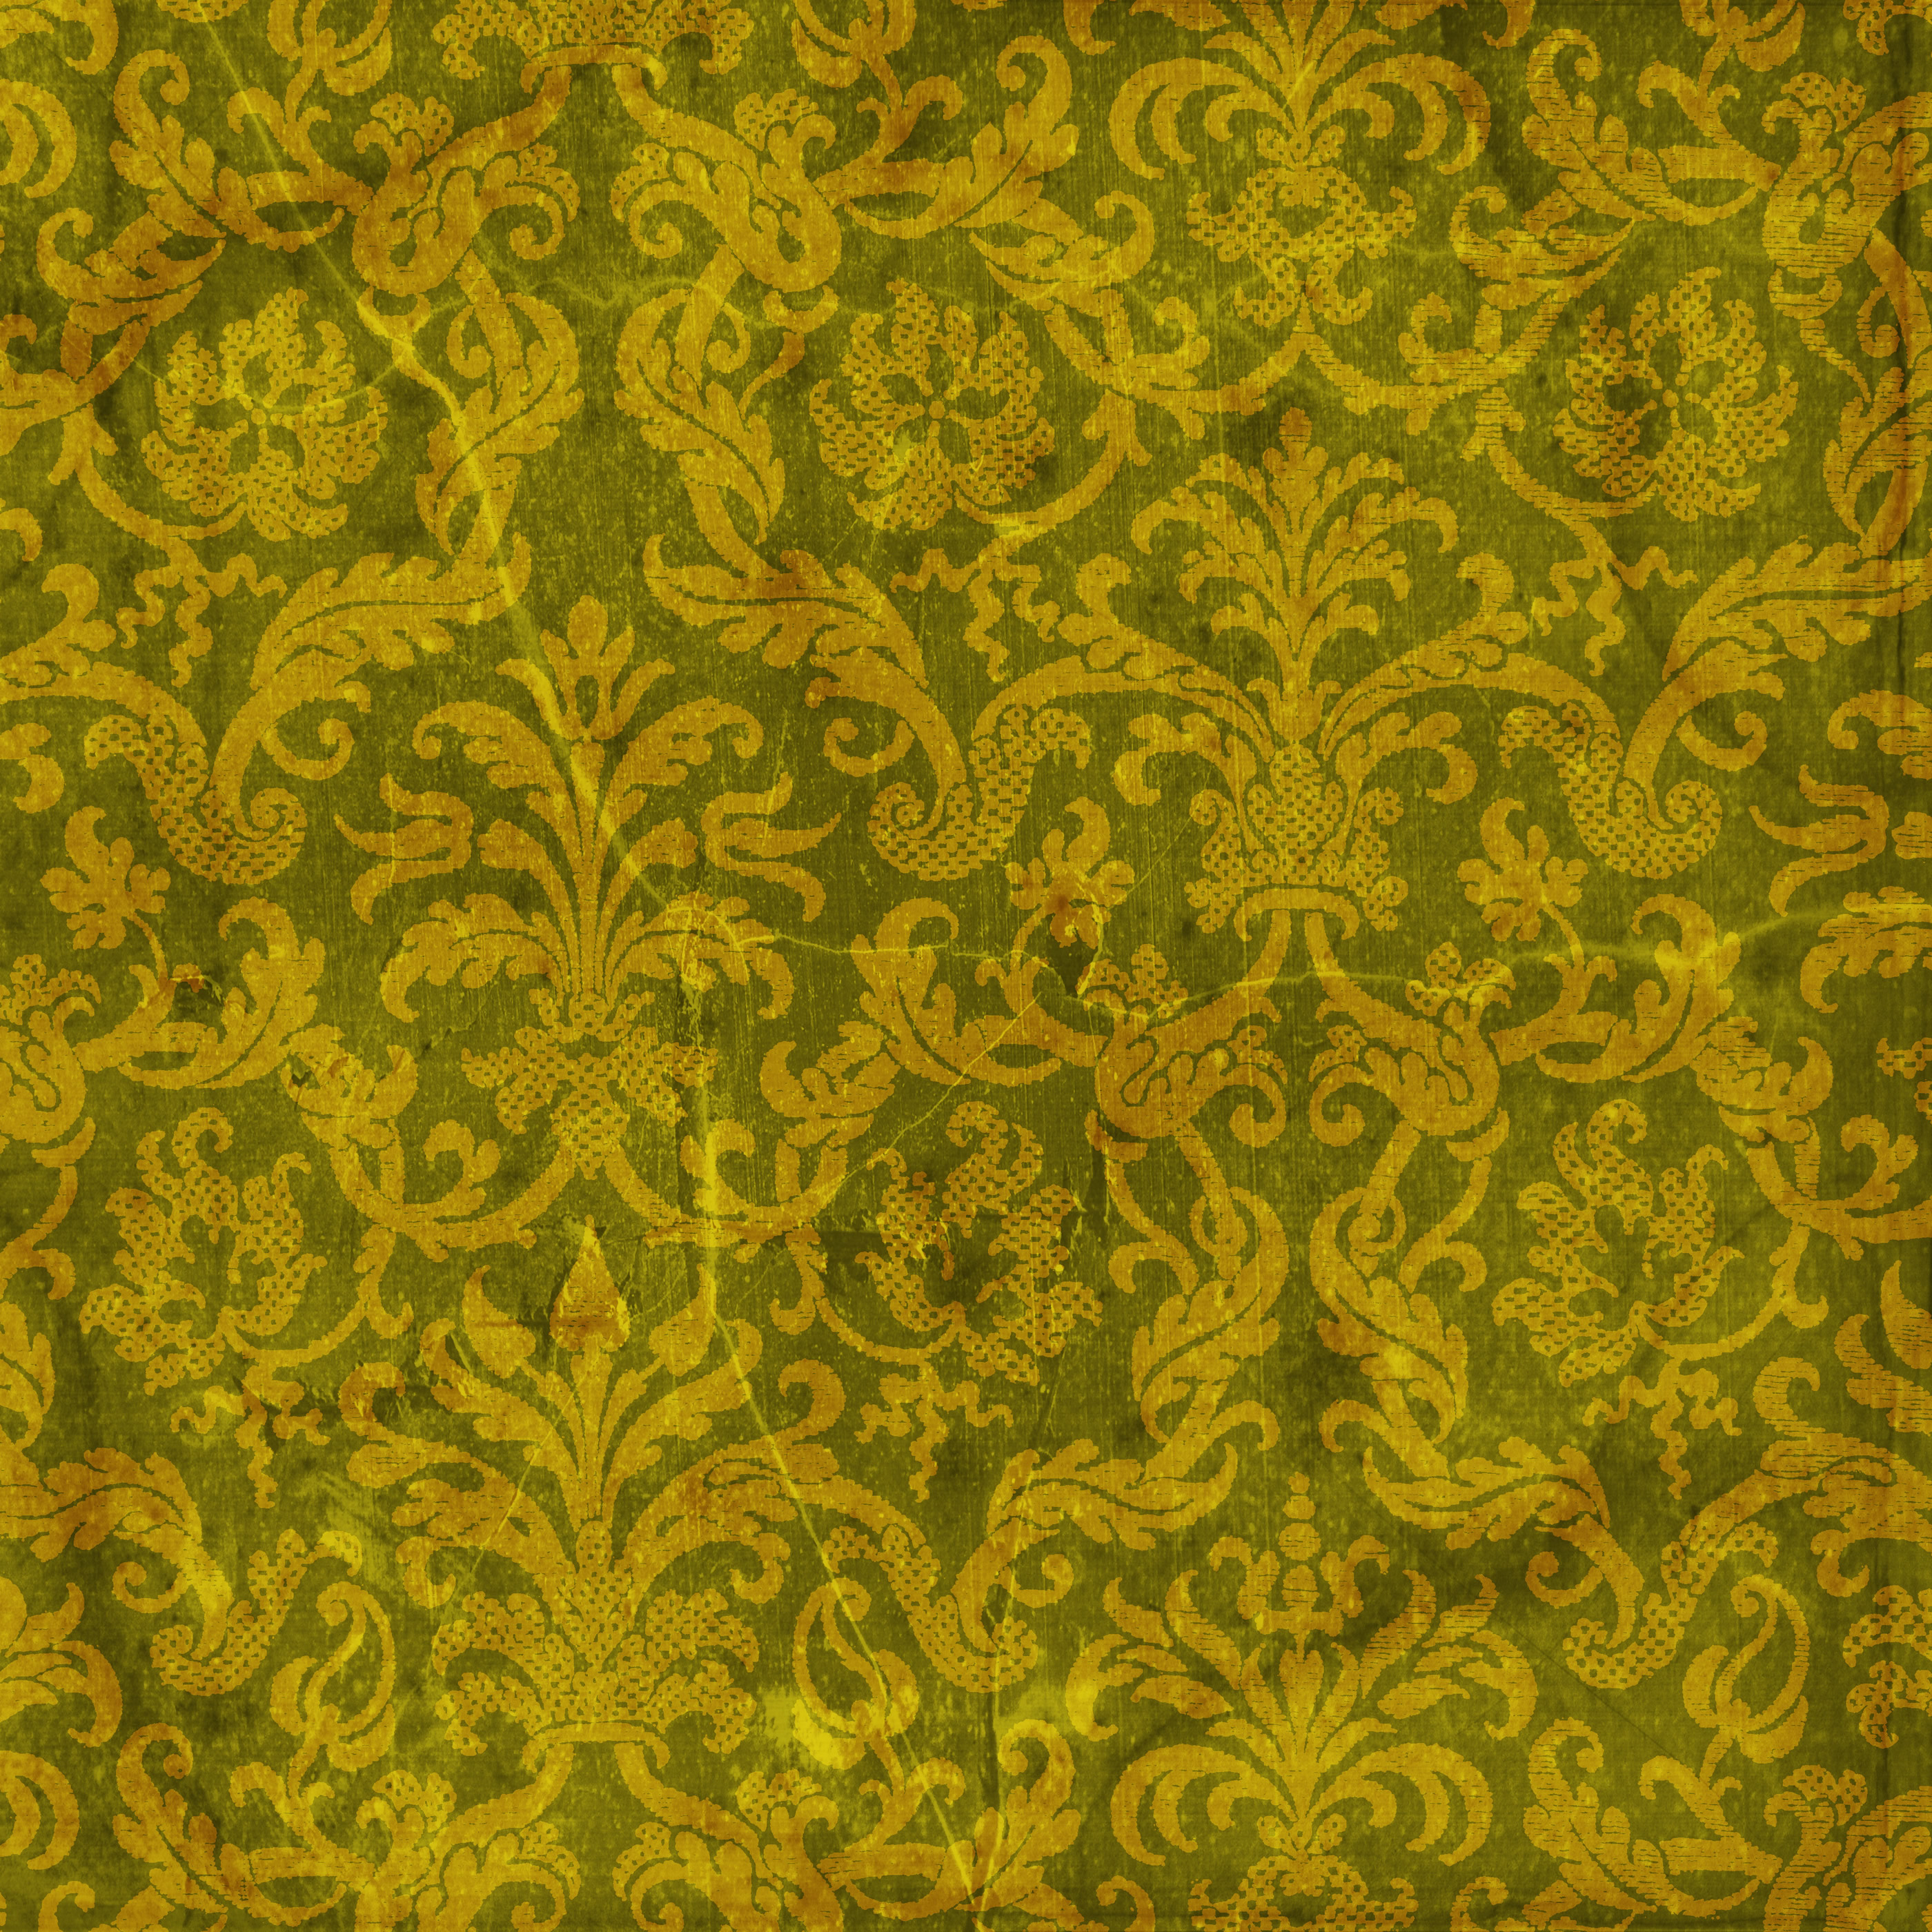 цветной орнамент, скачать фон, текстура, фото, желтый узор, yellow pattern background